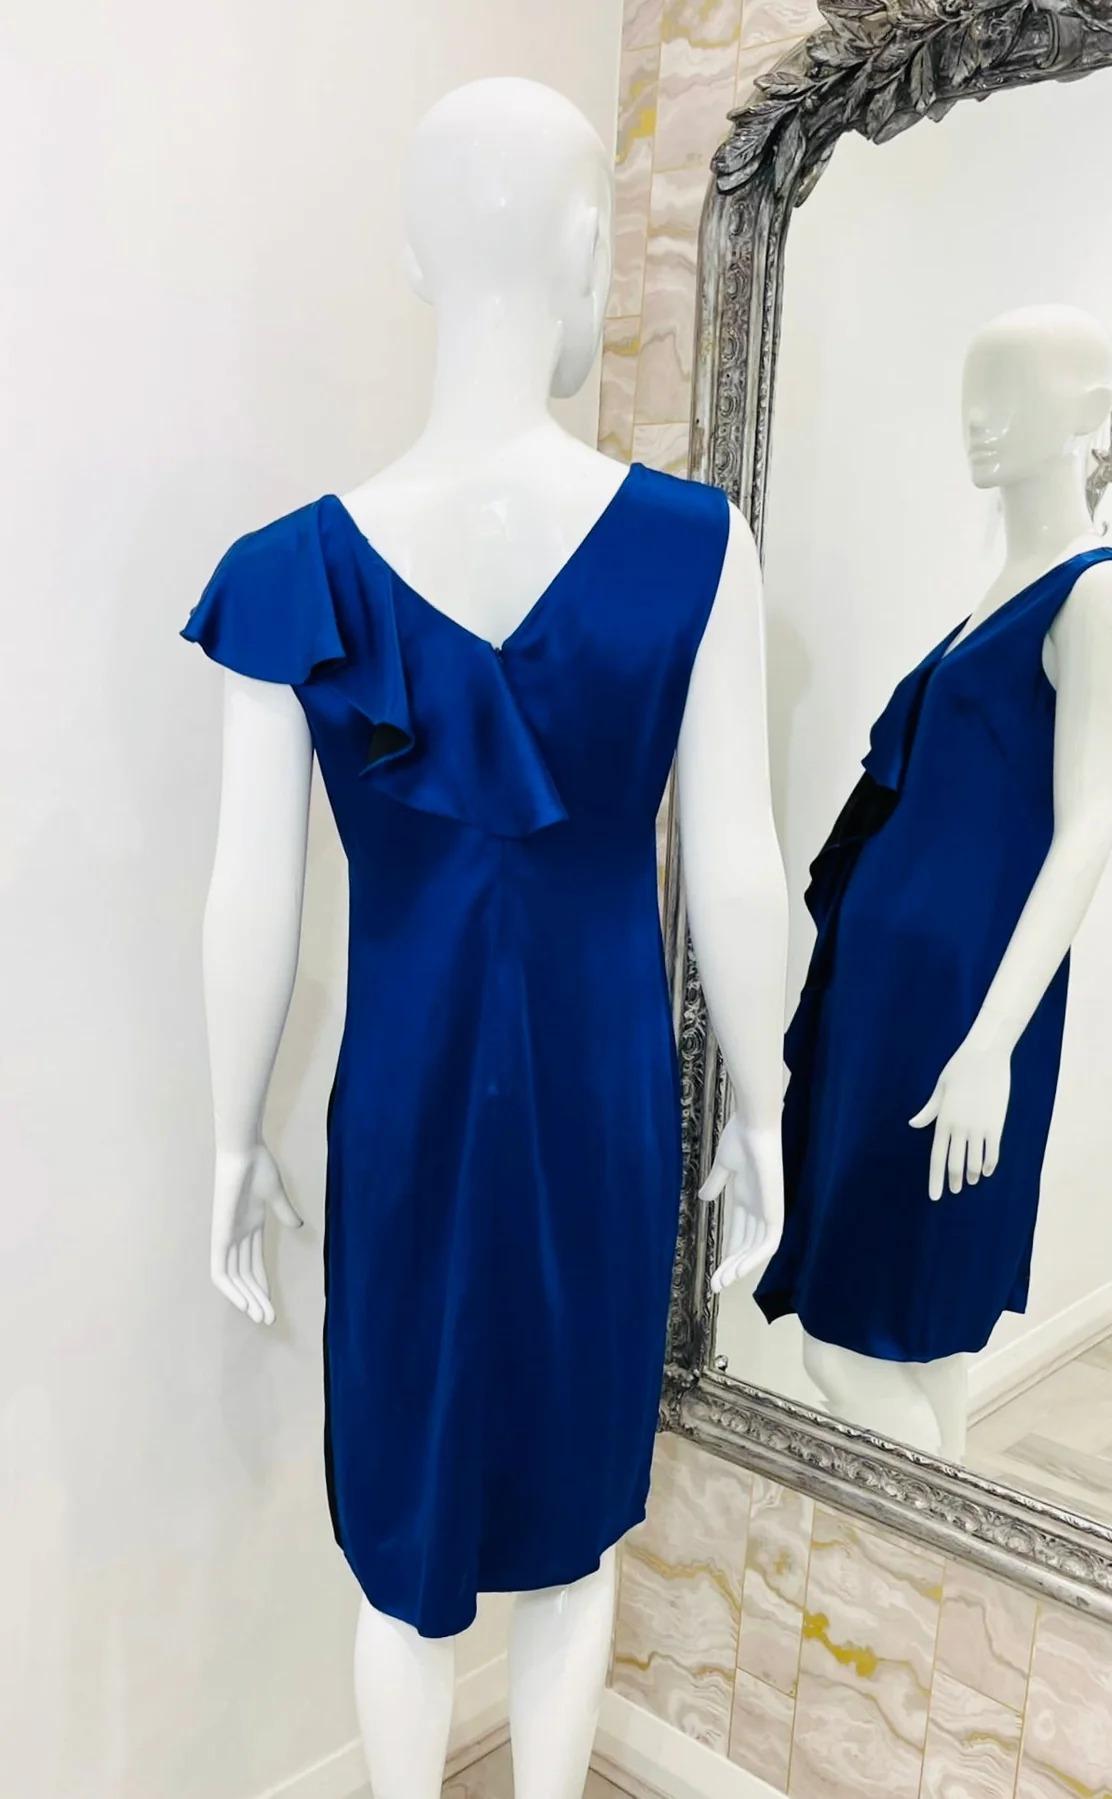 Diane Von Furstenberg Dress In Excellent Condition For Sale In London, GB